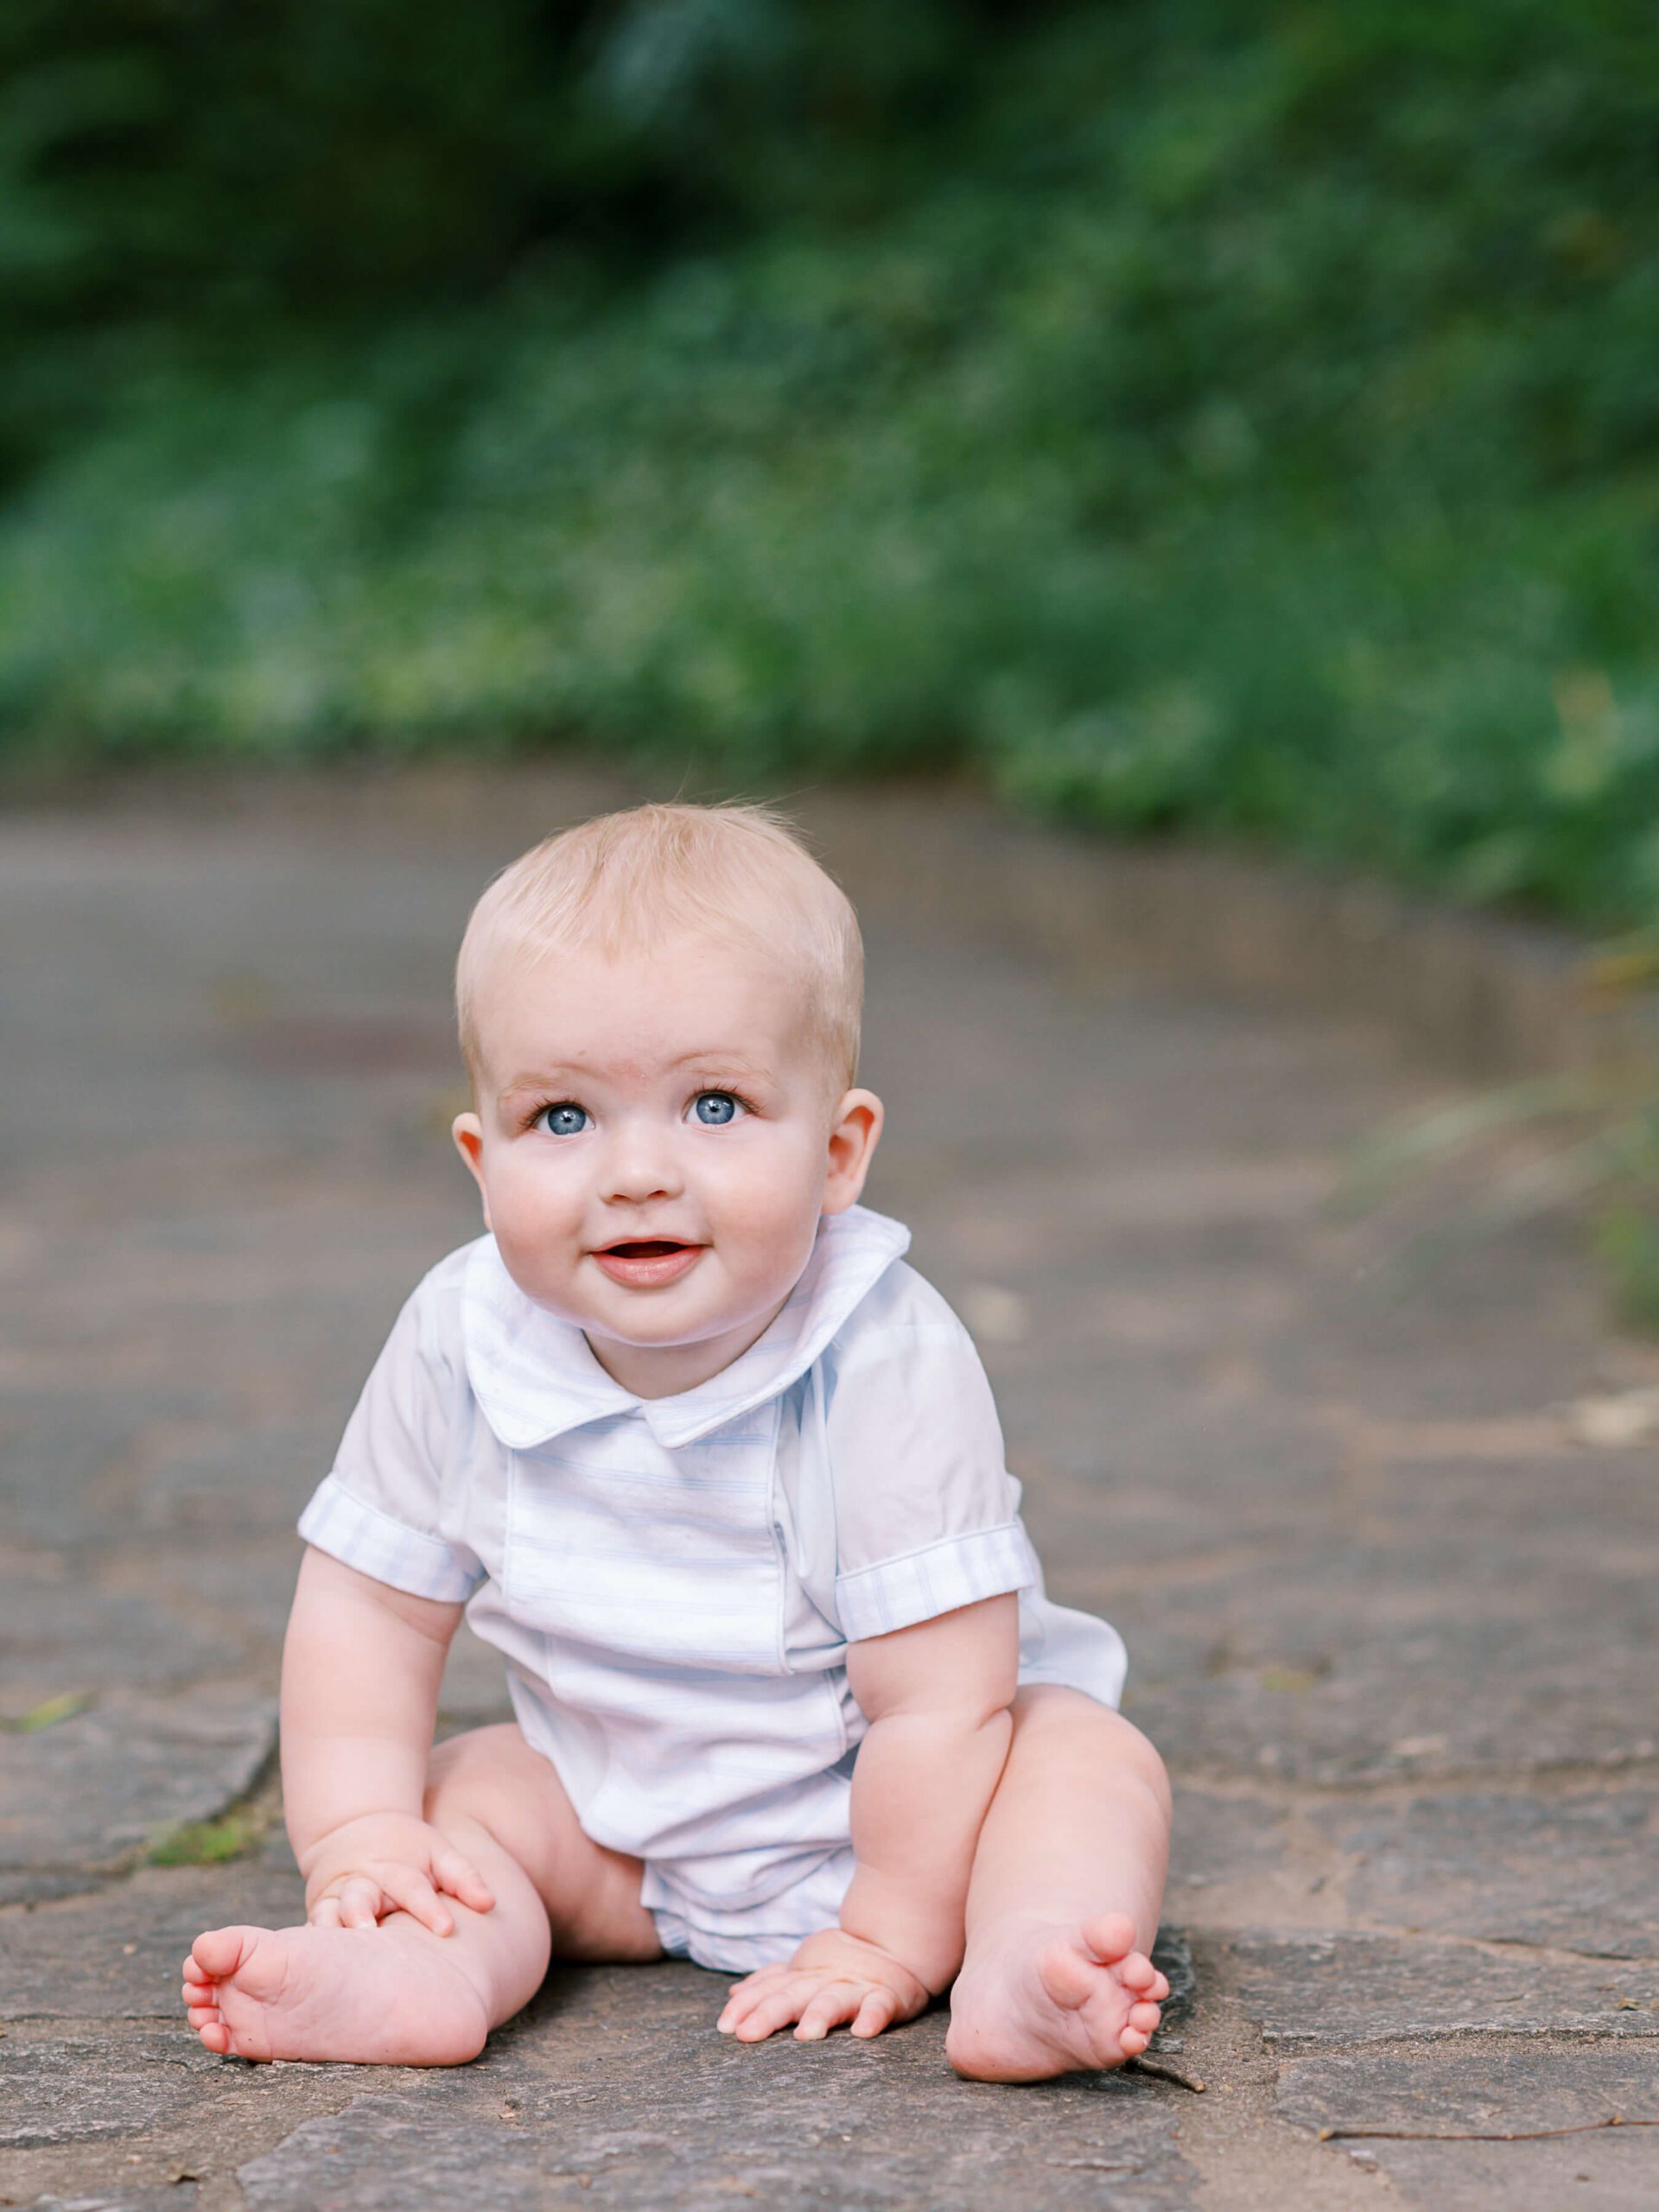 baby boy sitting on stone path